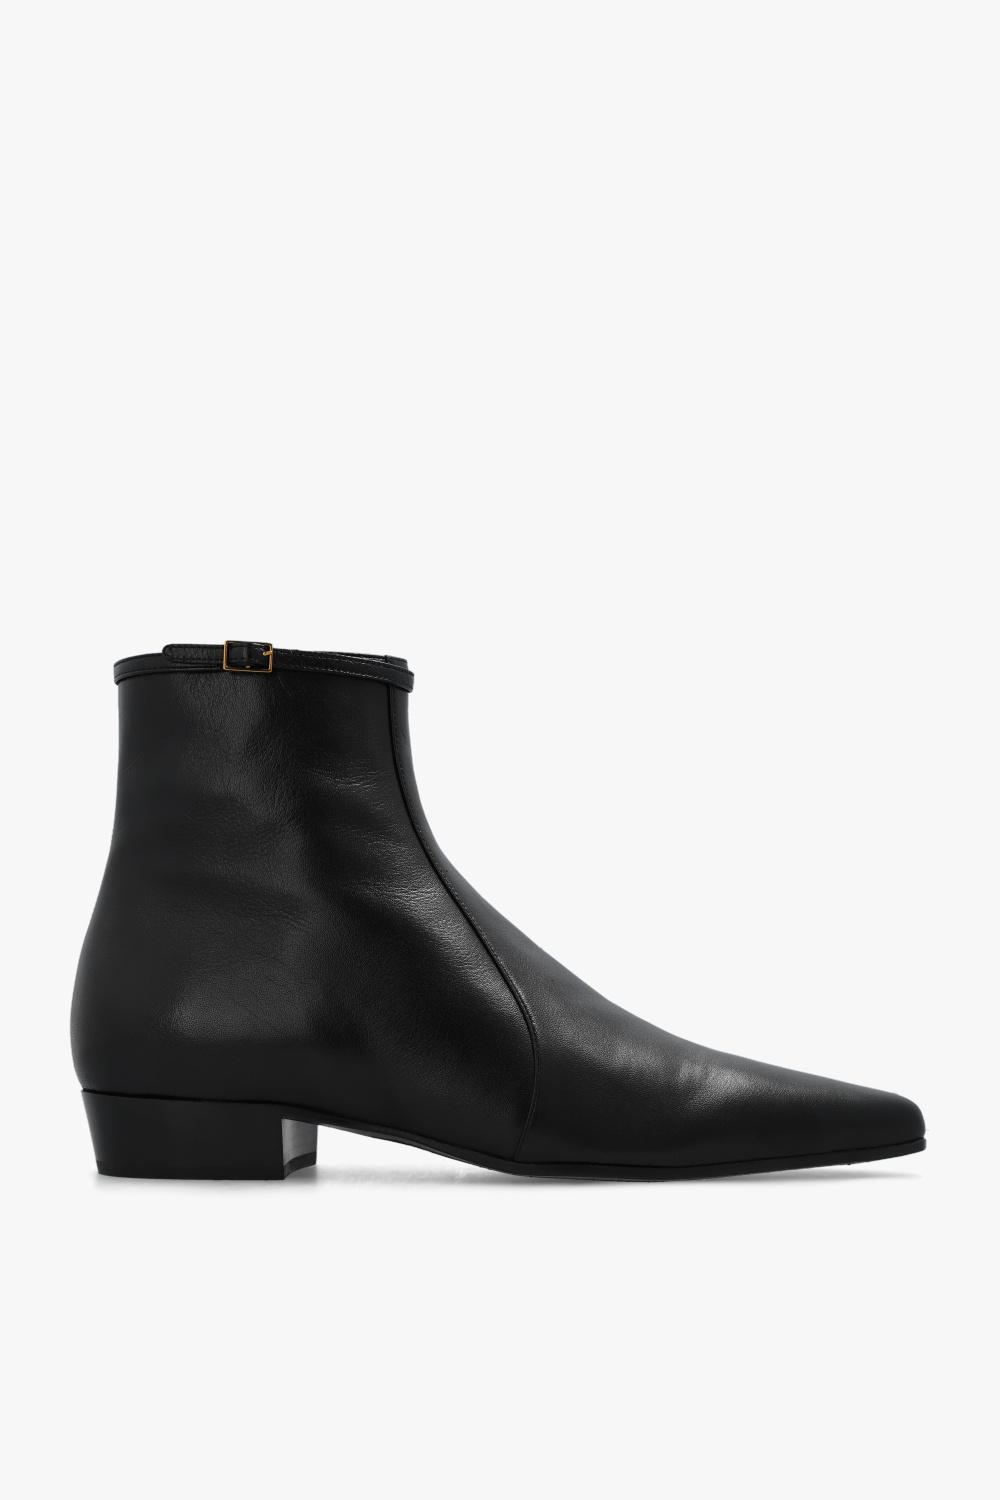 Saint Laurent Leather shoes